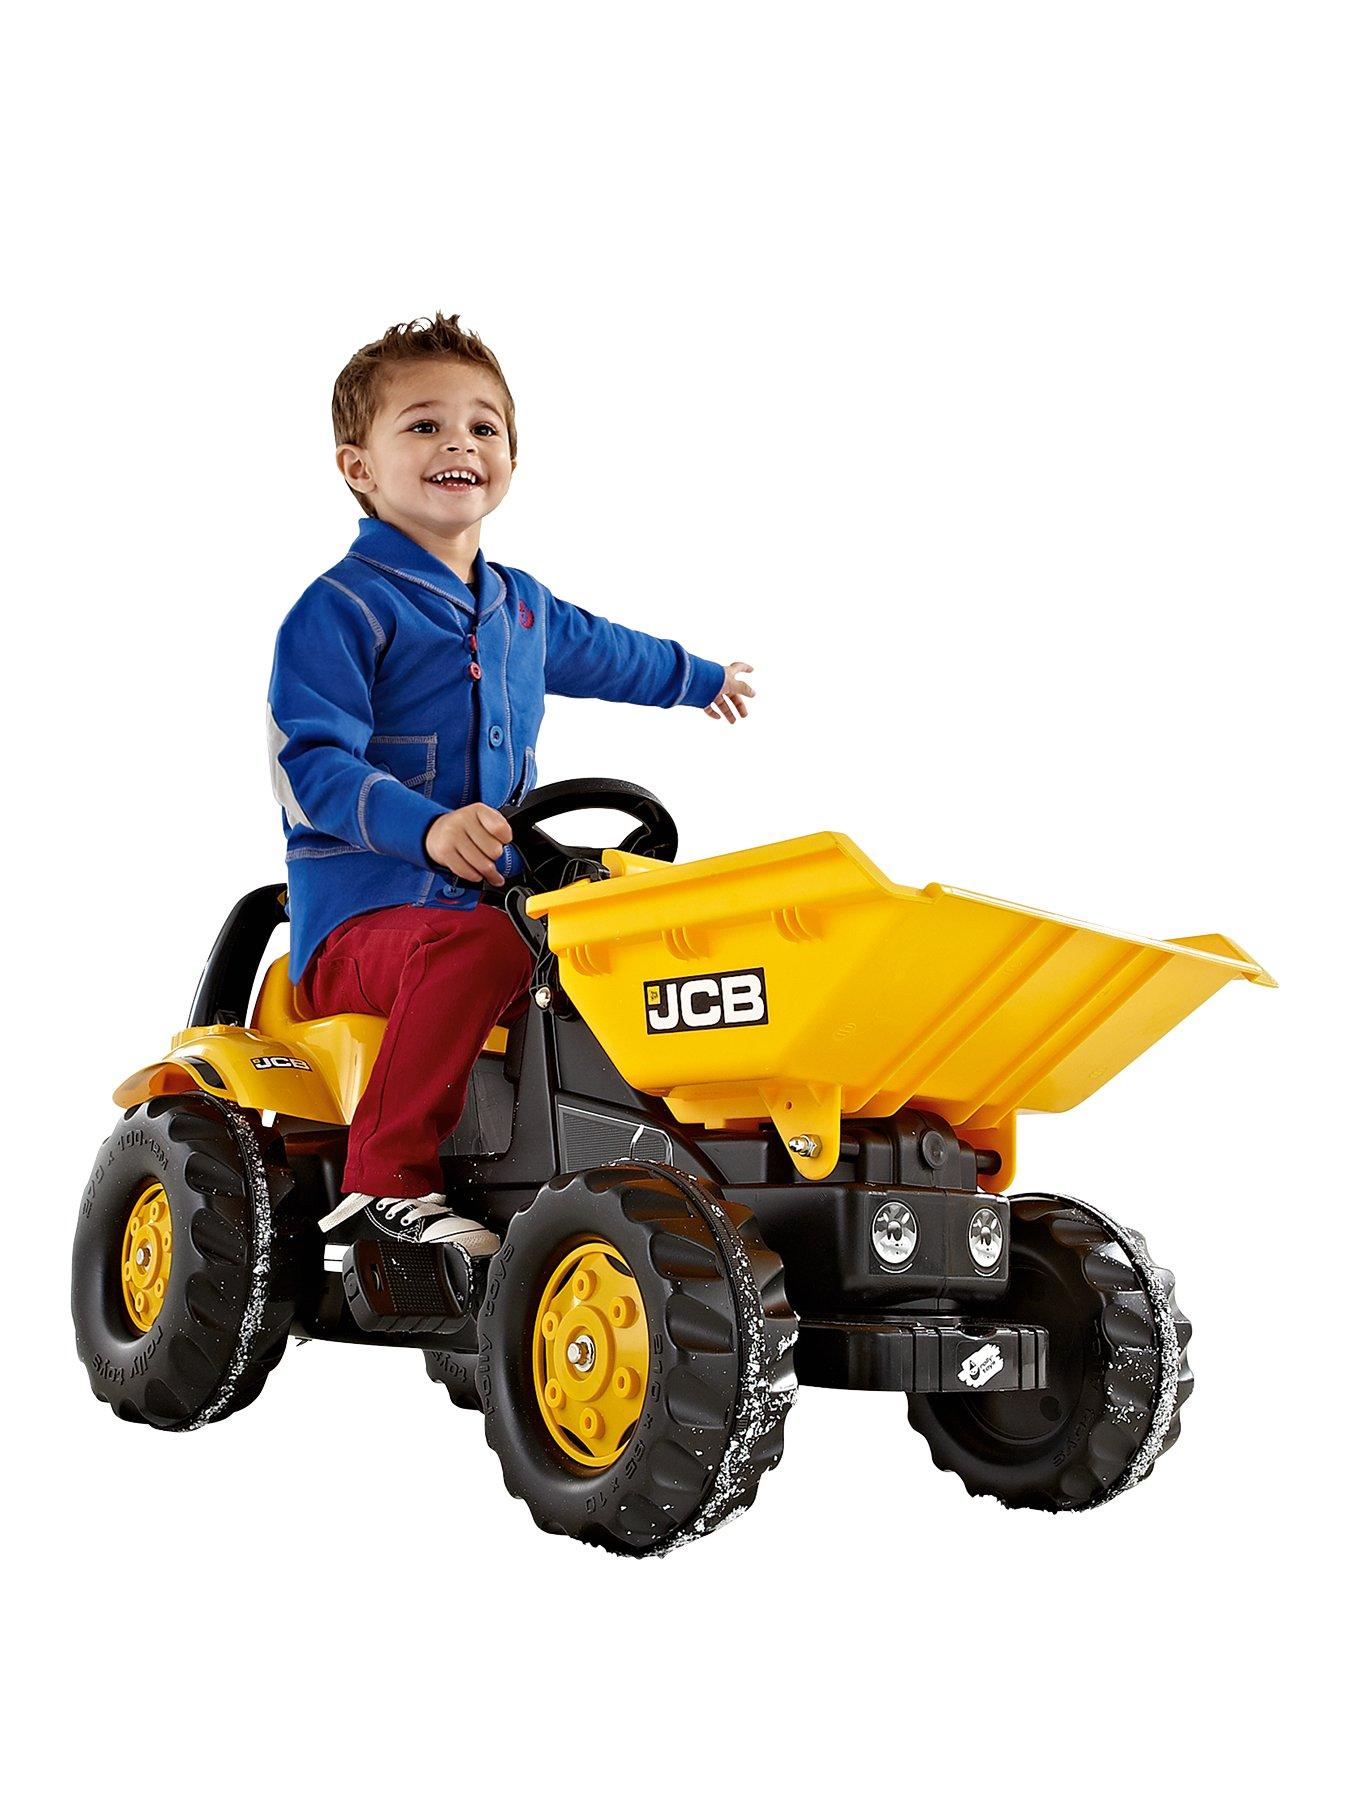 jcb truck for kids